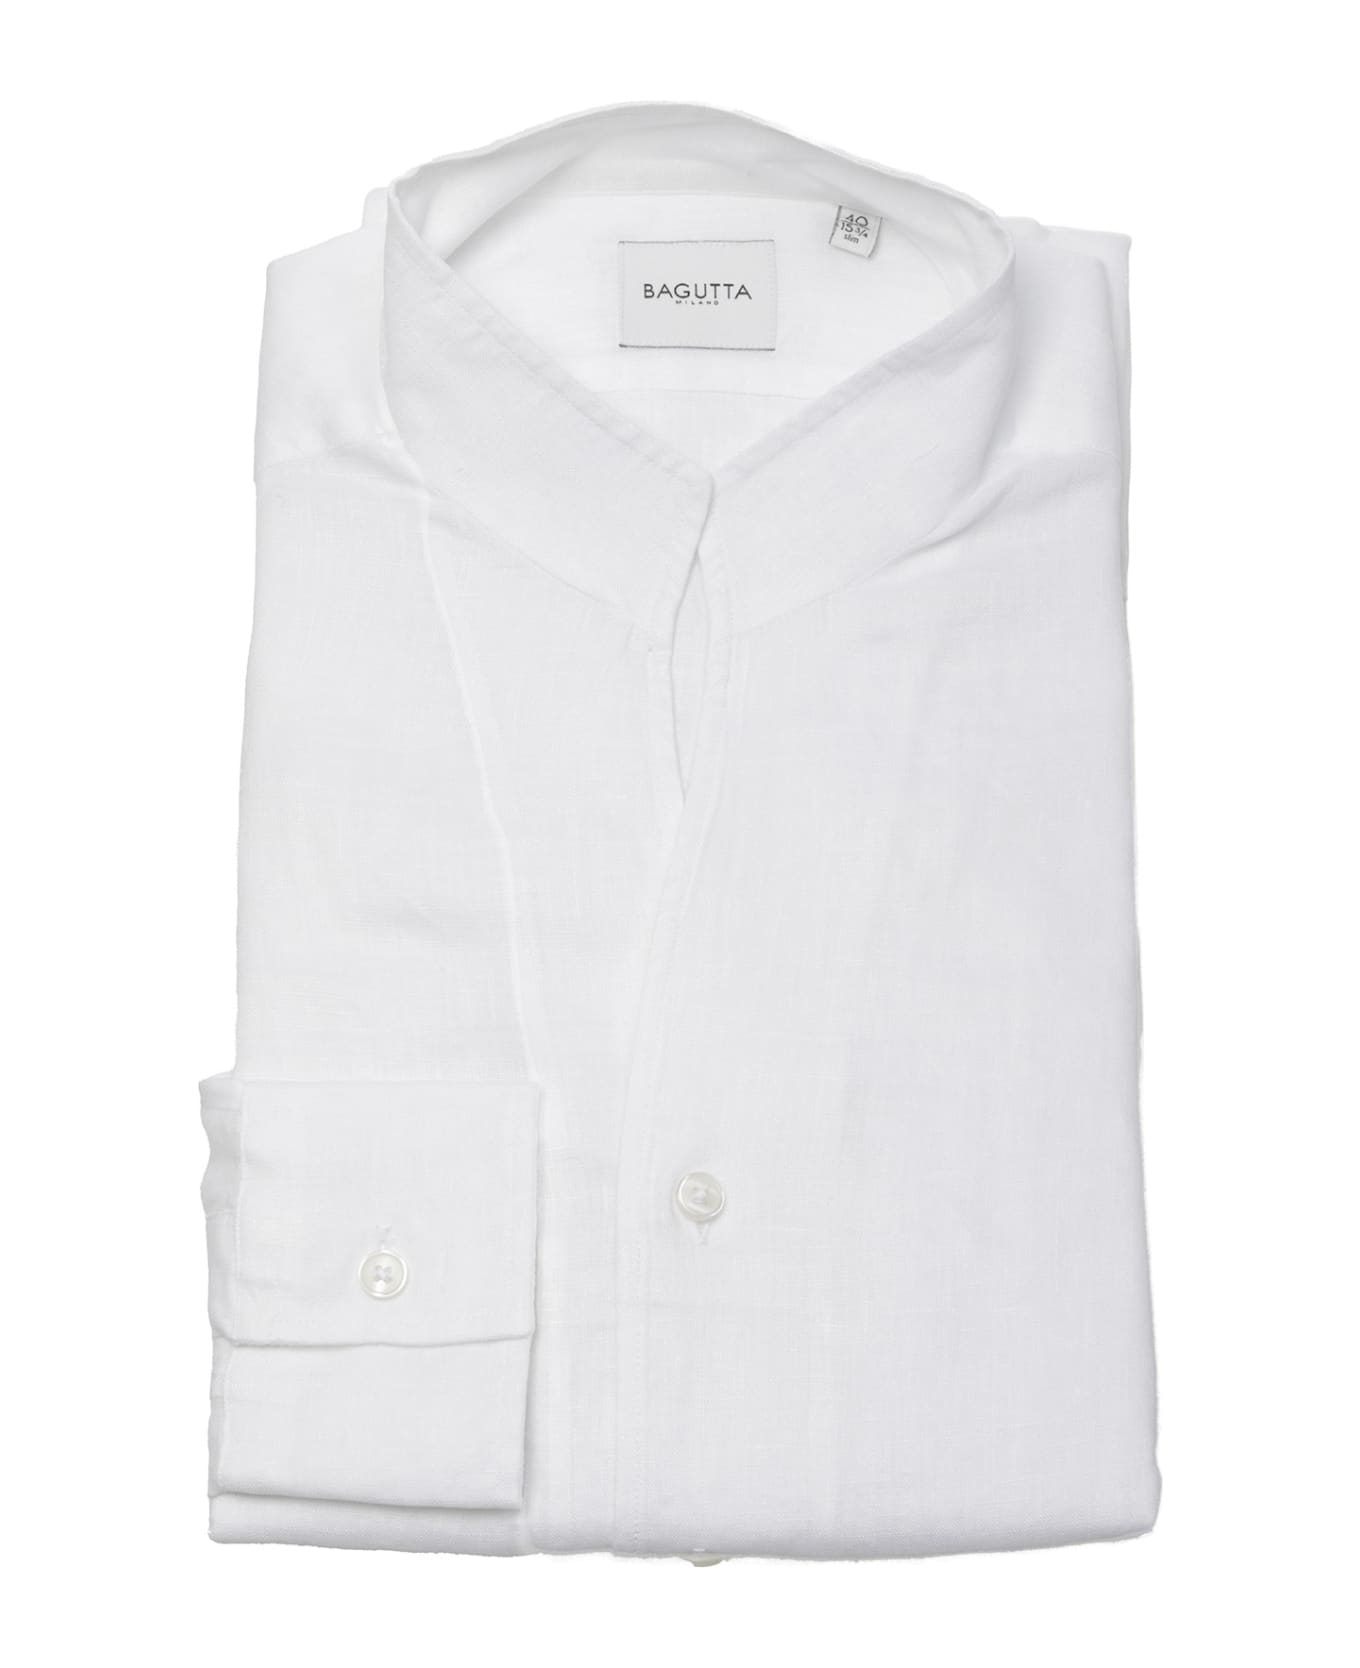 Bagutta Shirts White - White